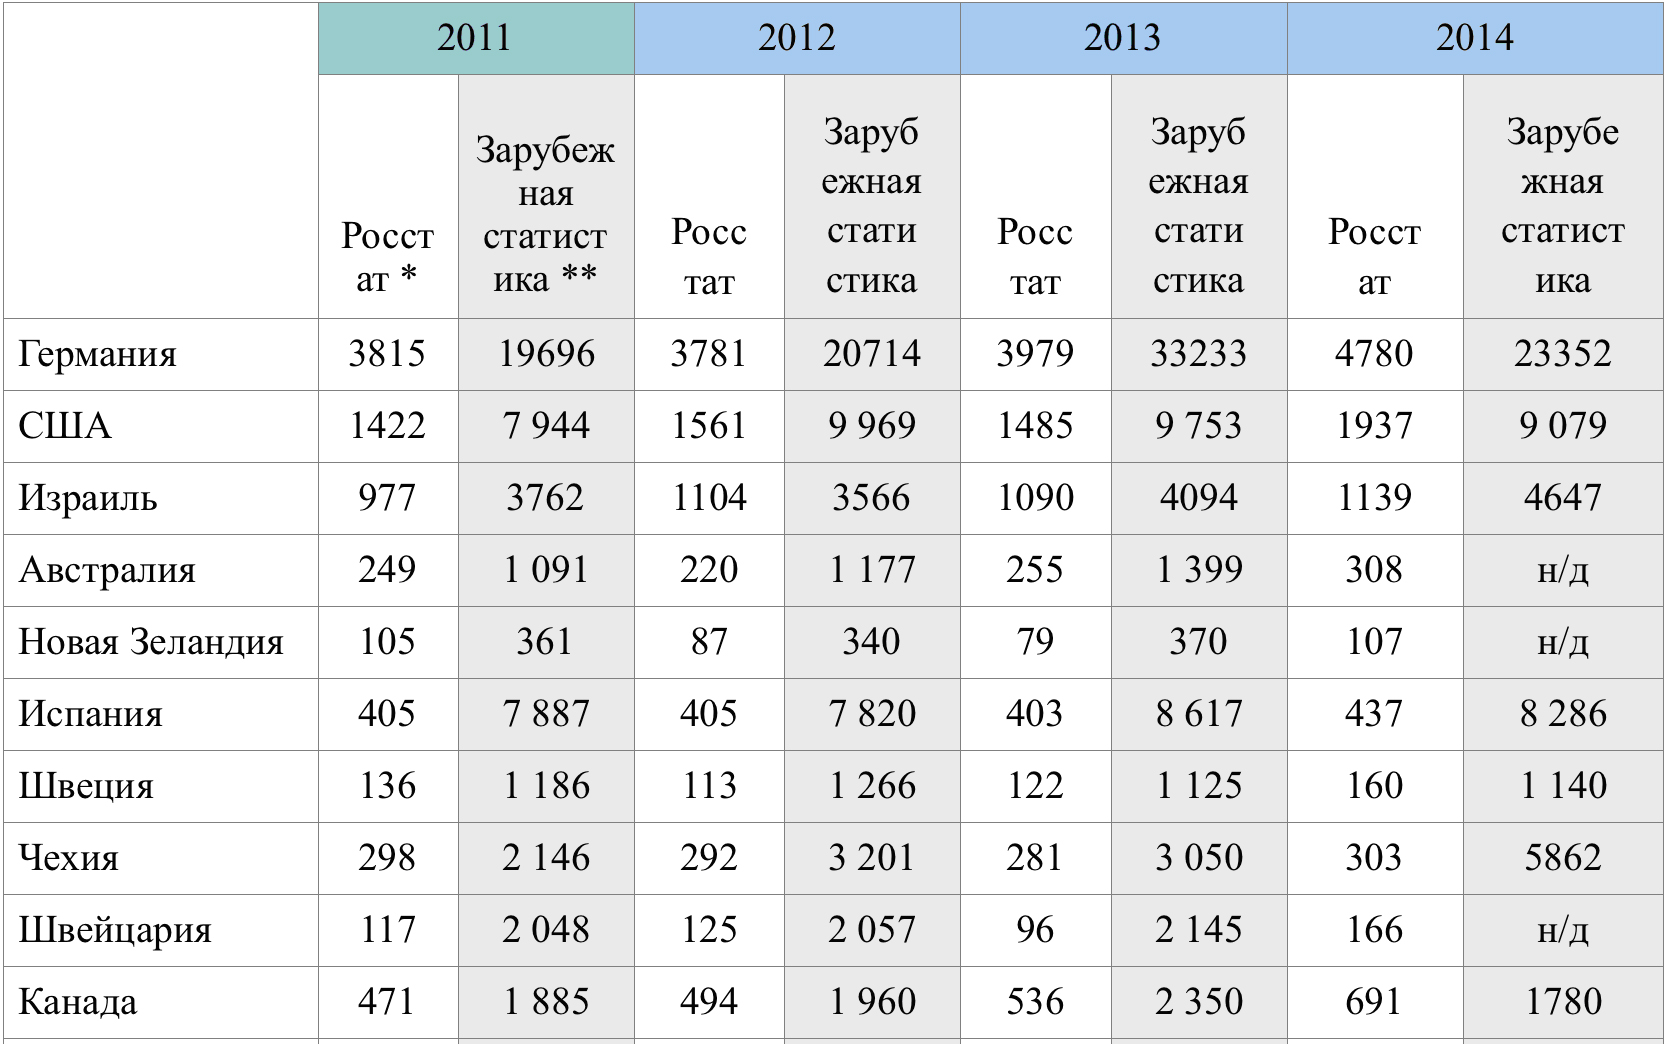 Статистика 2012 года. Эмиграция из России статистика. Эмиграция из России статистика по годам. Эмиграция в Россию статистика по годам. Эмиграция статистика по странам.